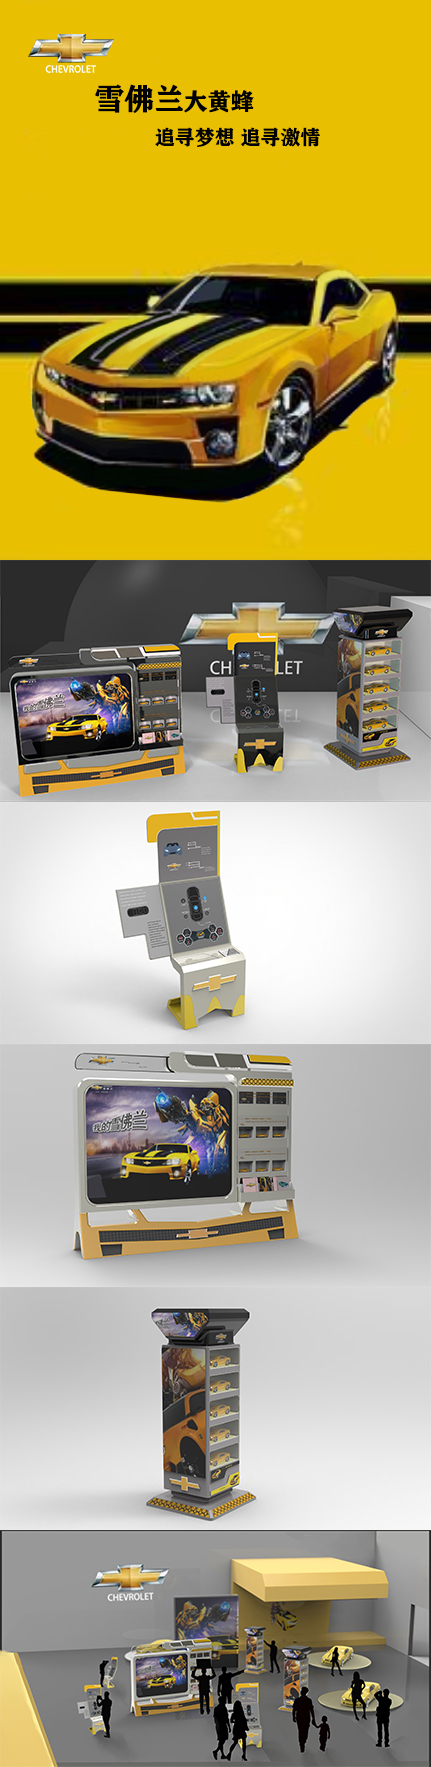 雪佛兰展台创意设计        文创产品设计         无人送餐车